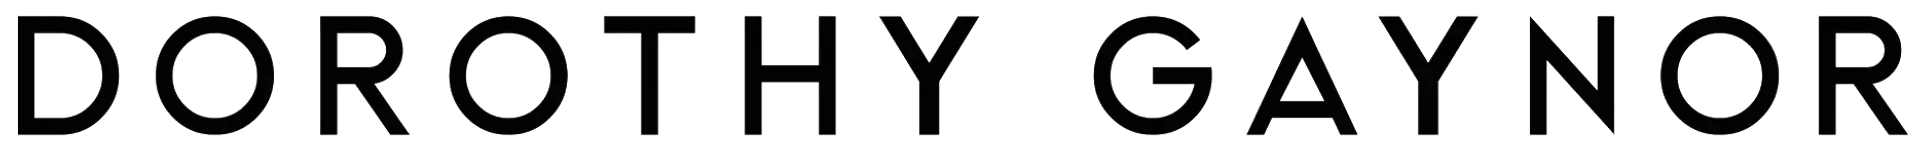 DOROTHY GAYNOR logo de catálogo